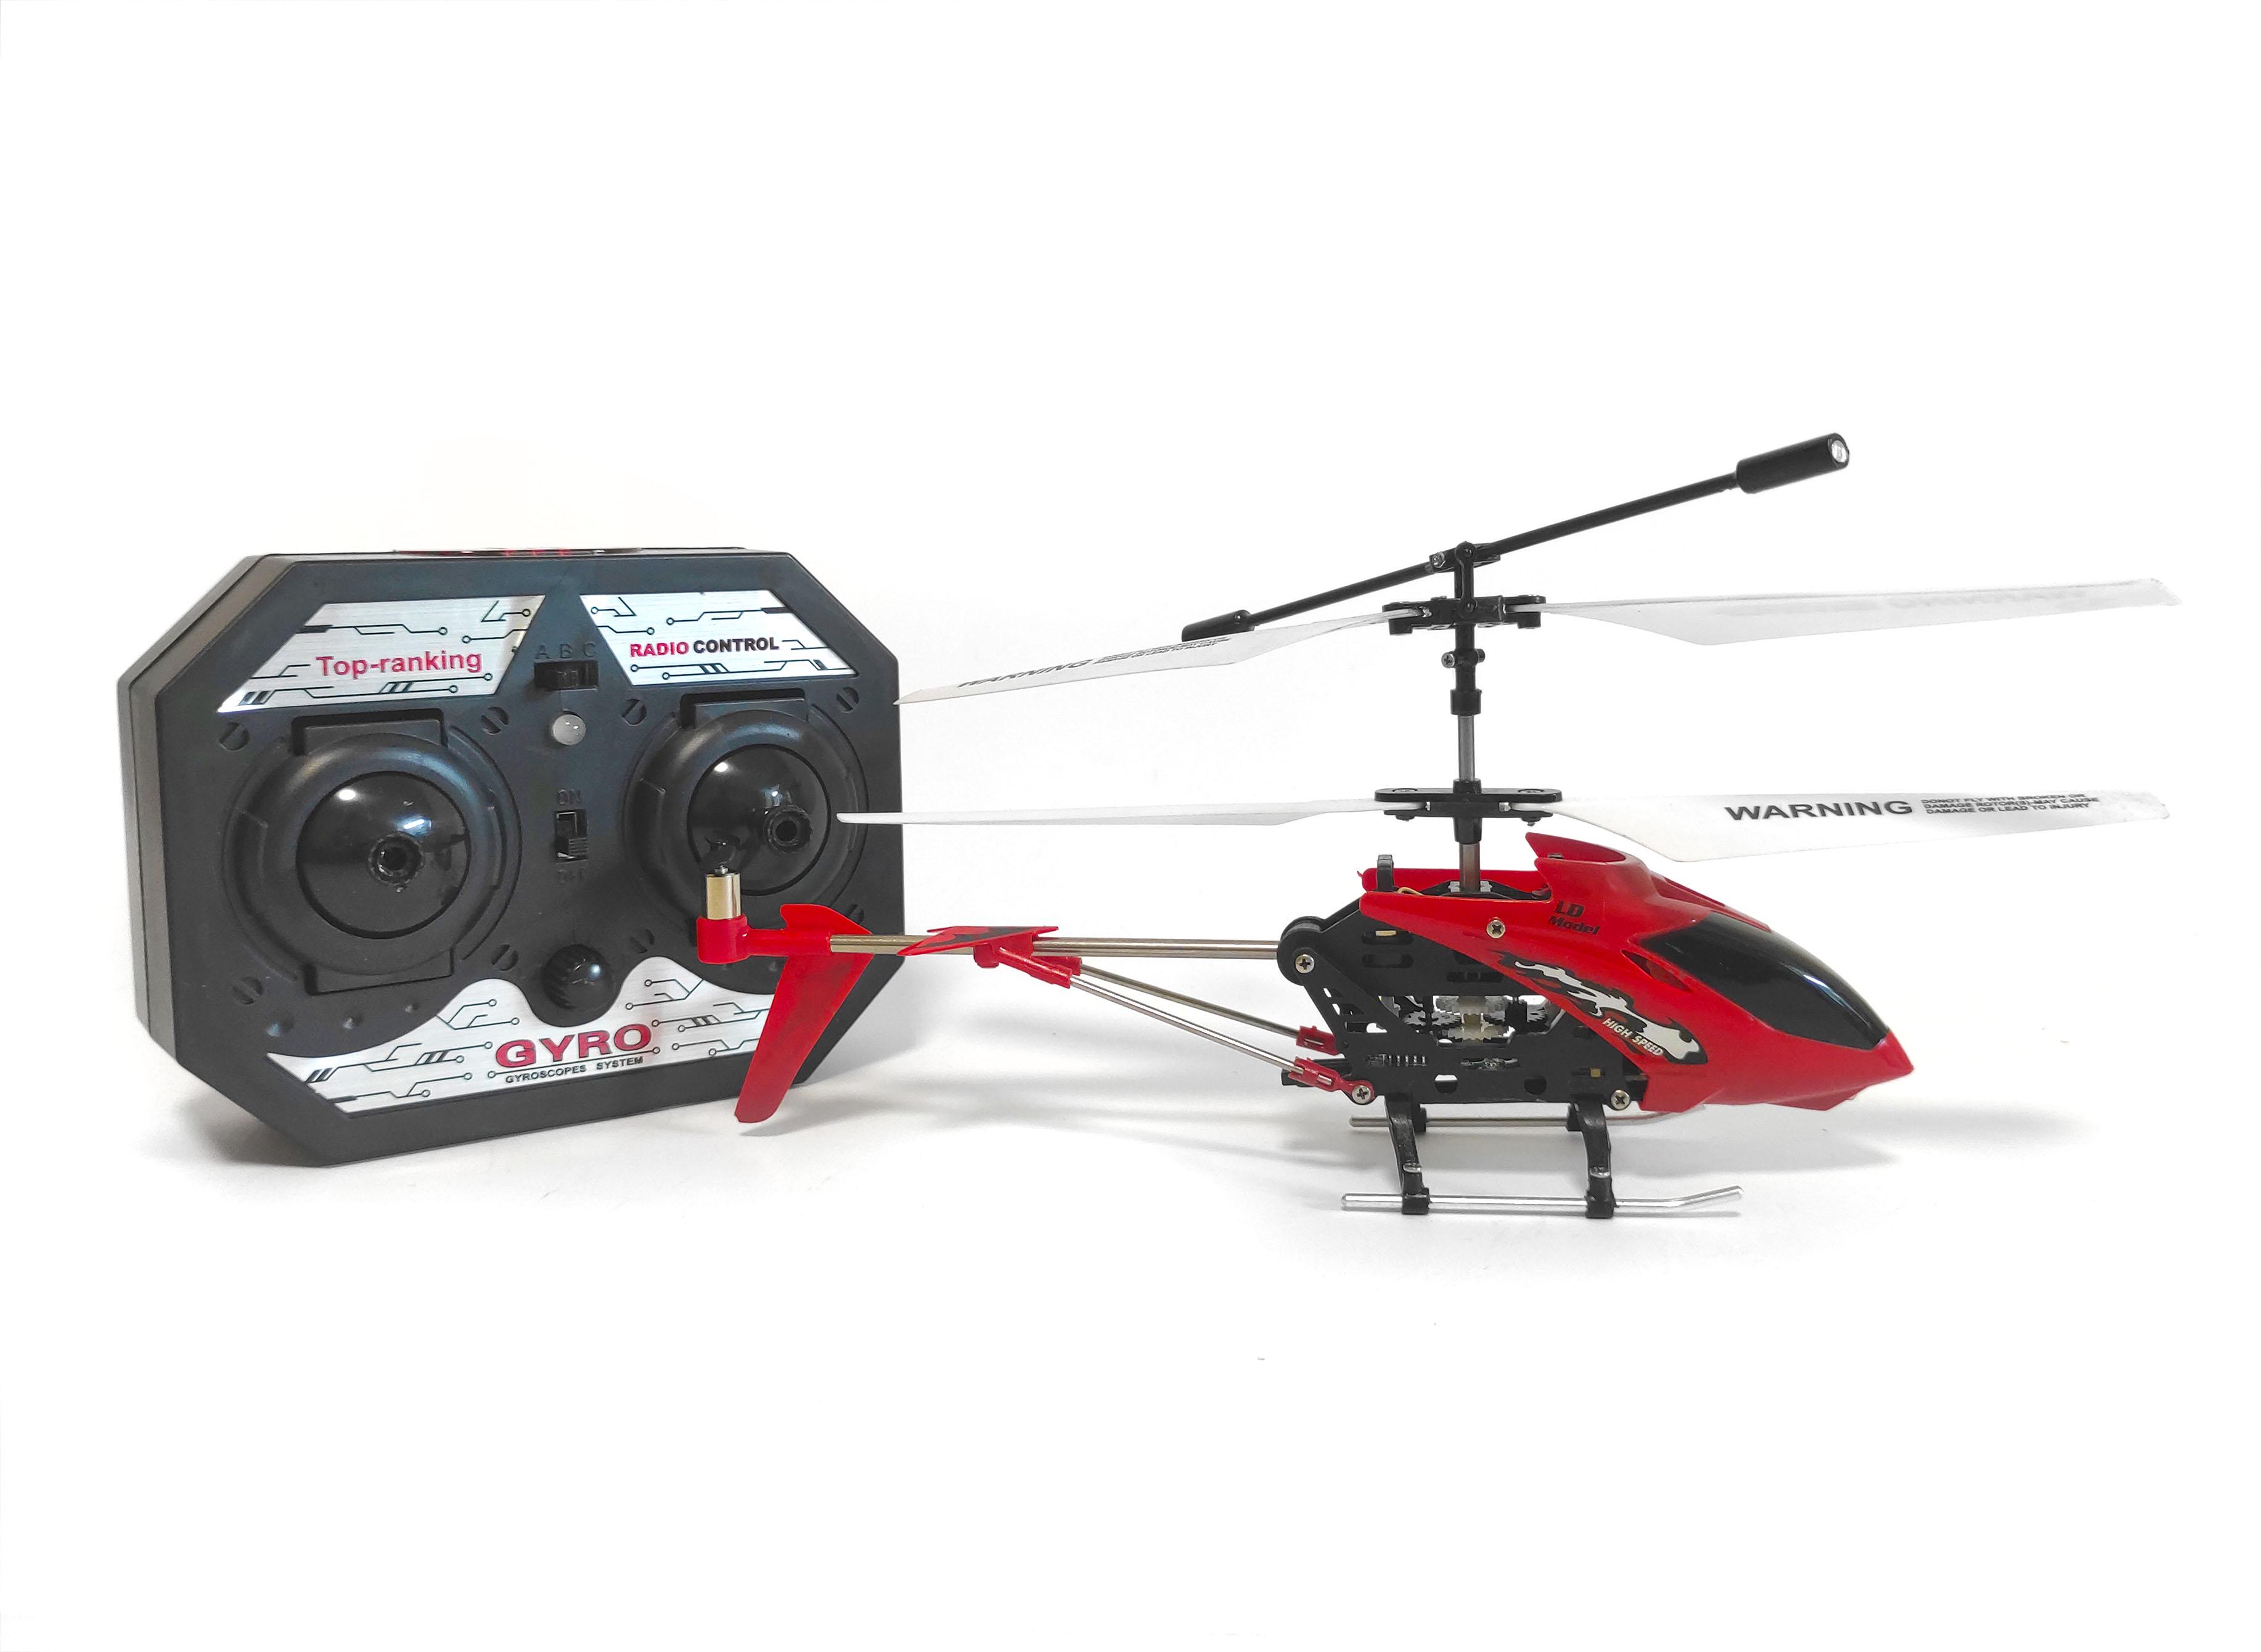 Новая пилотажная модель вертолета 100-го класса от WLToys с бесфлайбарной системой